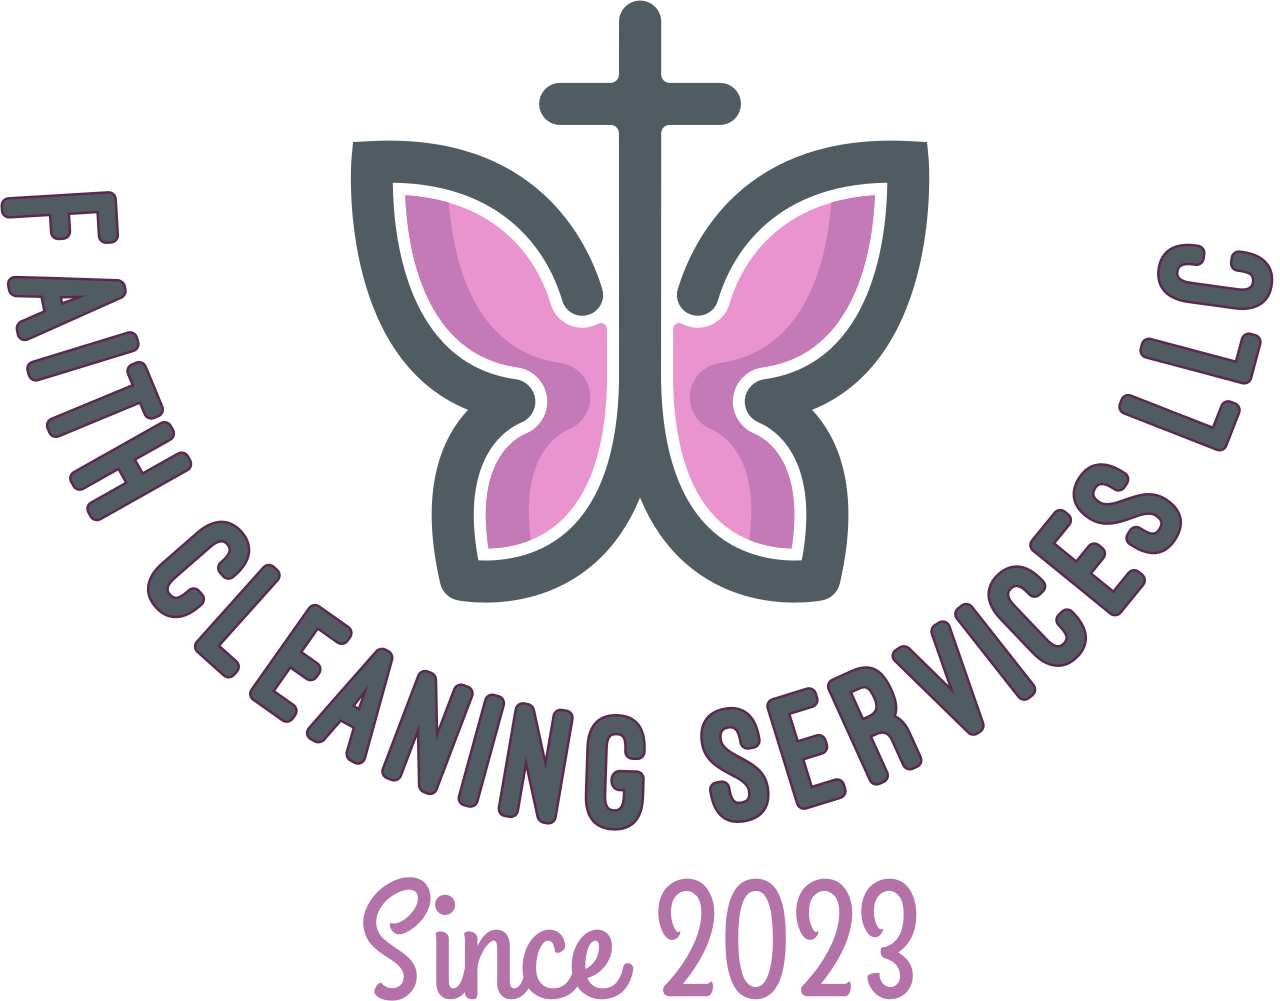 Faith cleaning services LLC 's logo